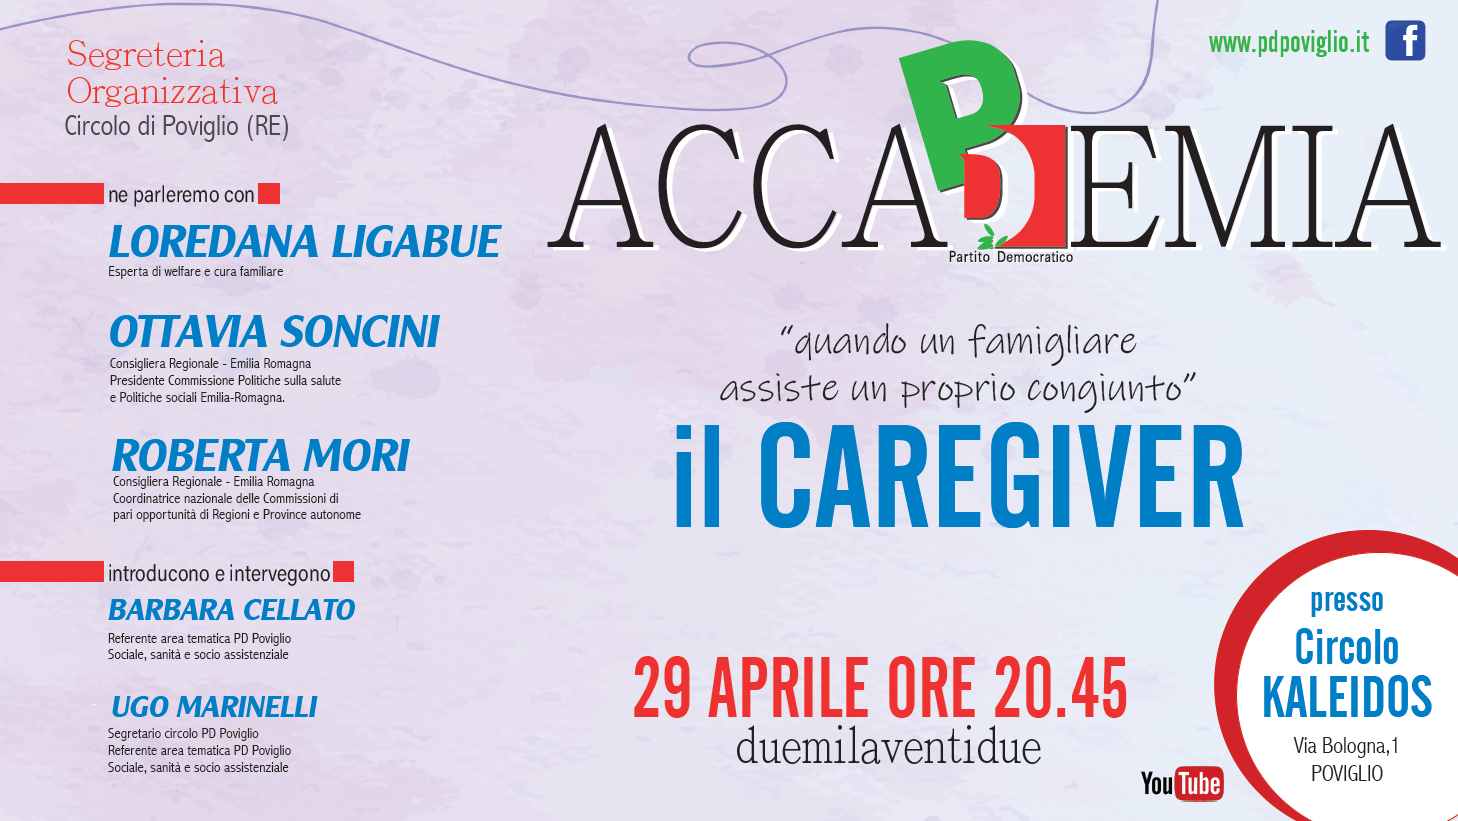 Evento-Caregiver-Accademia-PD-Poviglio-29-04-2022